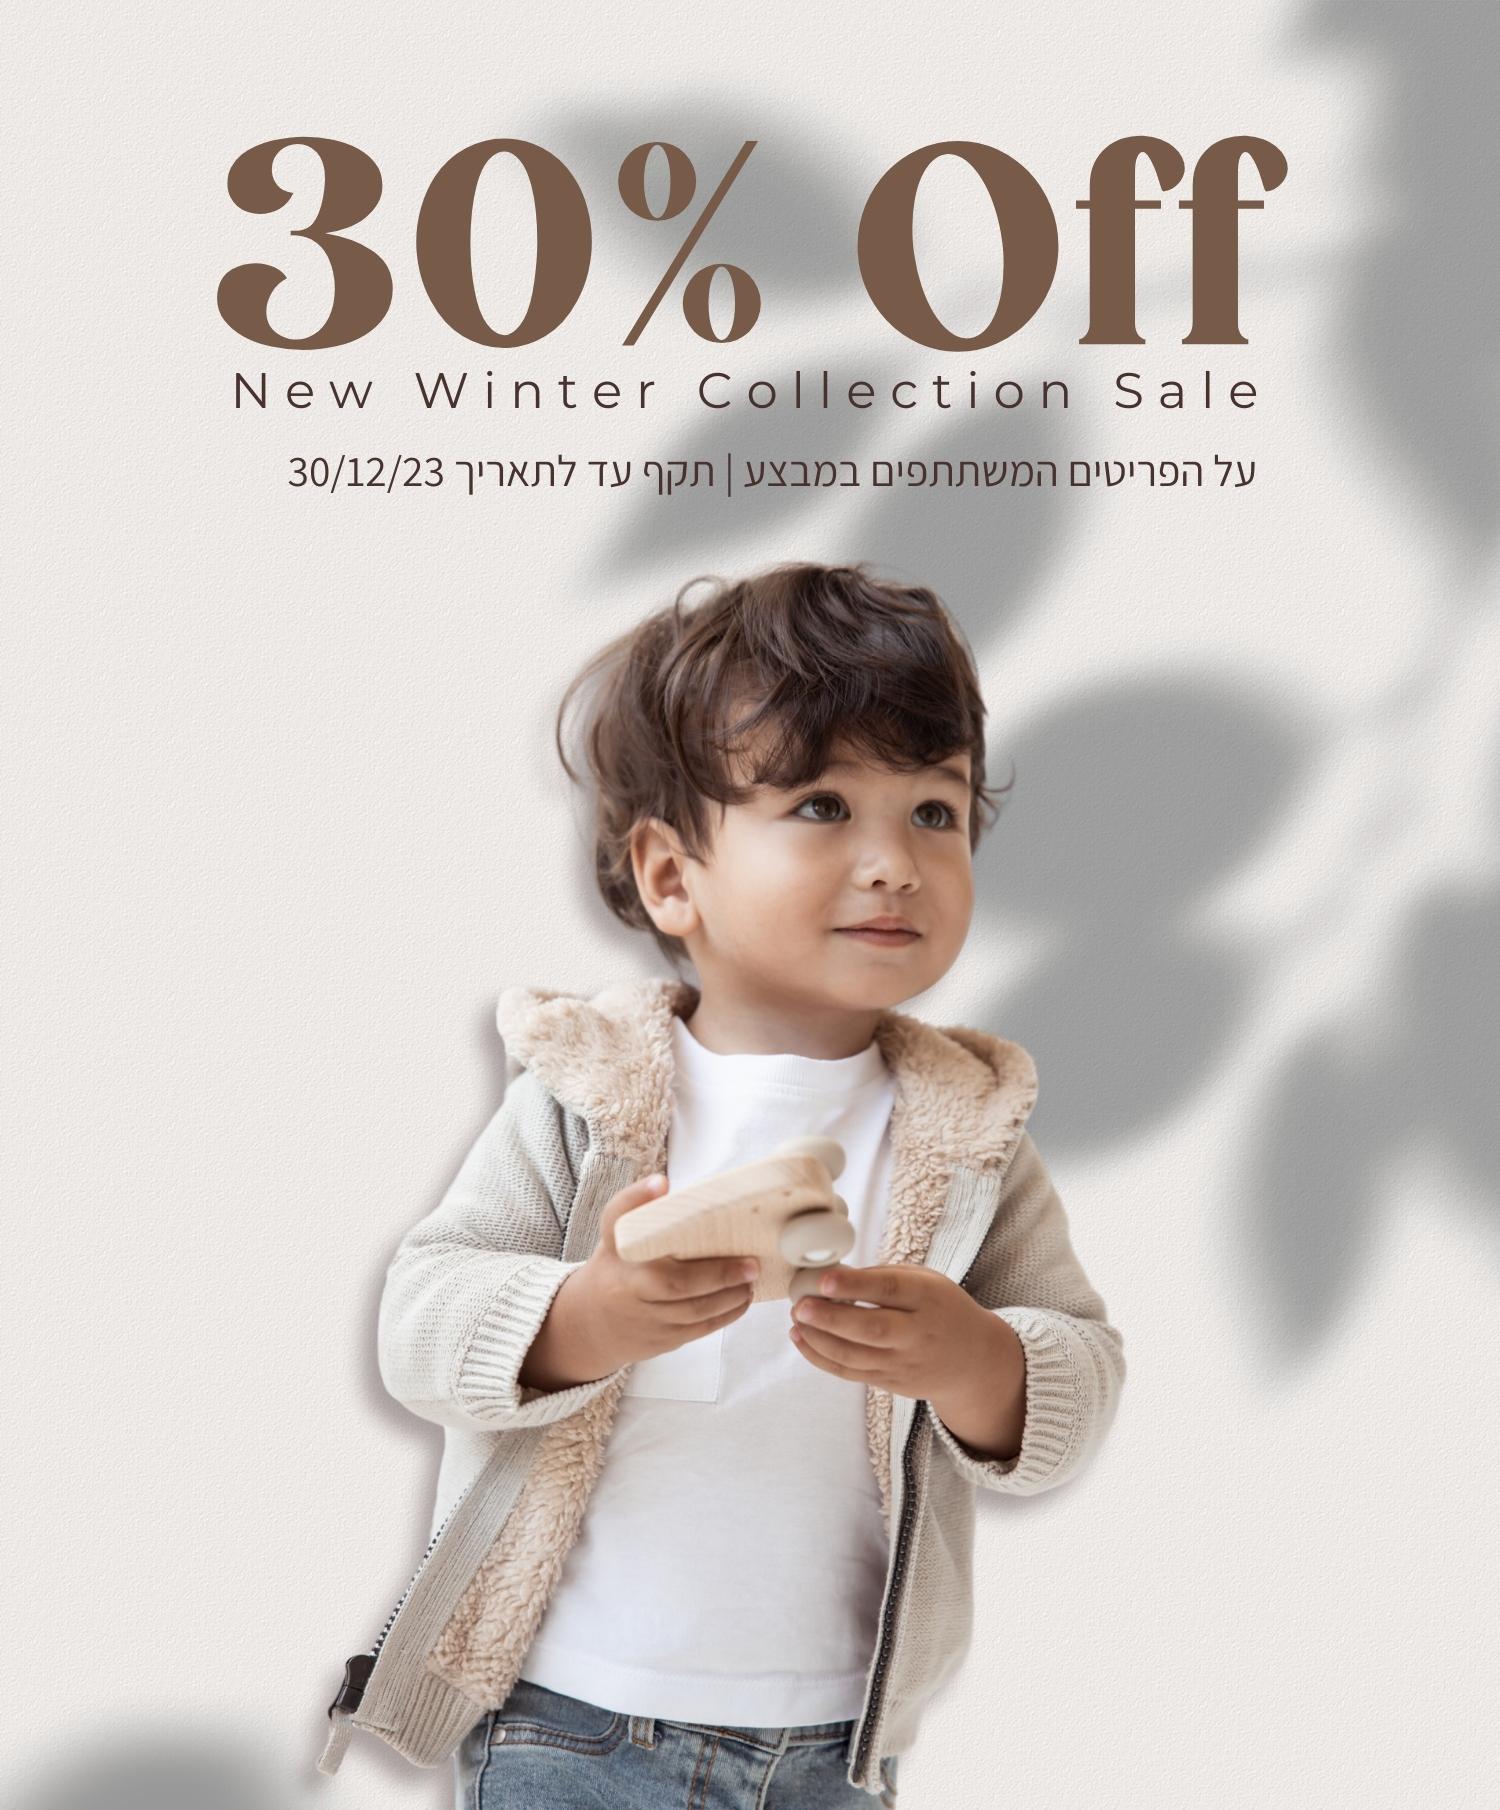 . 30% off. new winter collection sale. על הפריטים המשתתפים במבצע. תקף עד לתאריך 30.12.23